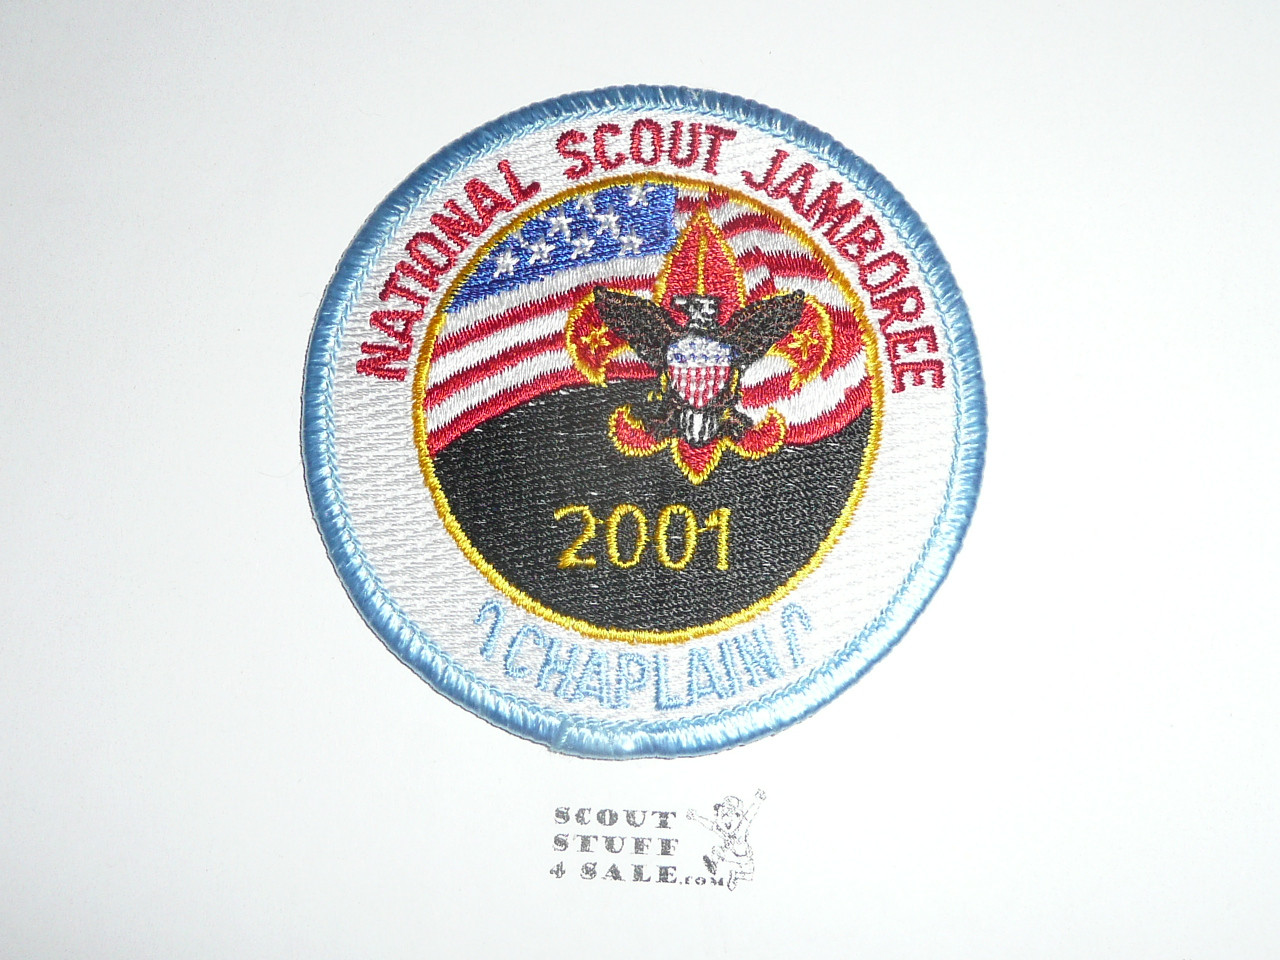 2001 National Jamboree Chaplain STAFF Patch